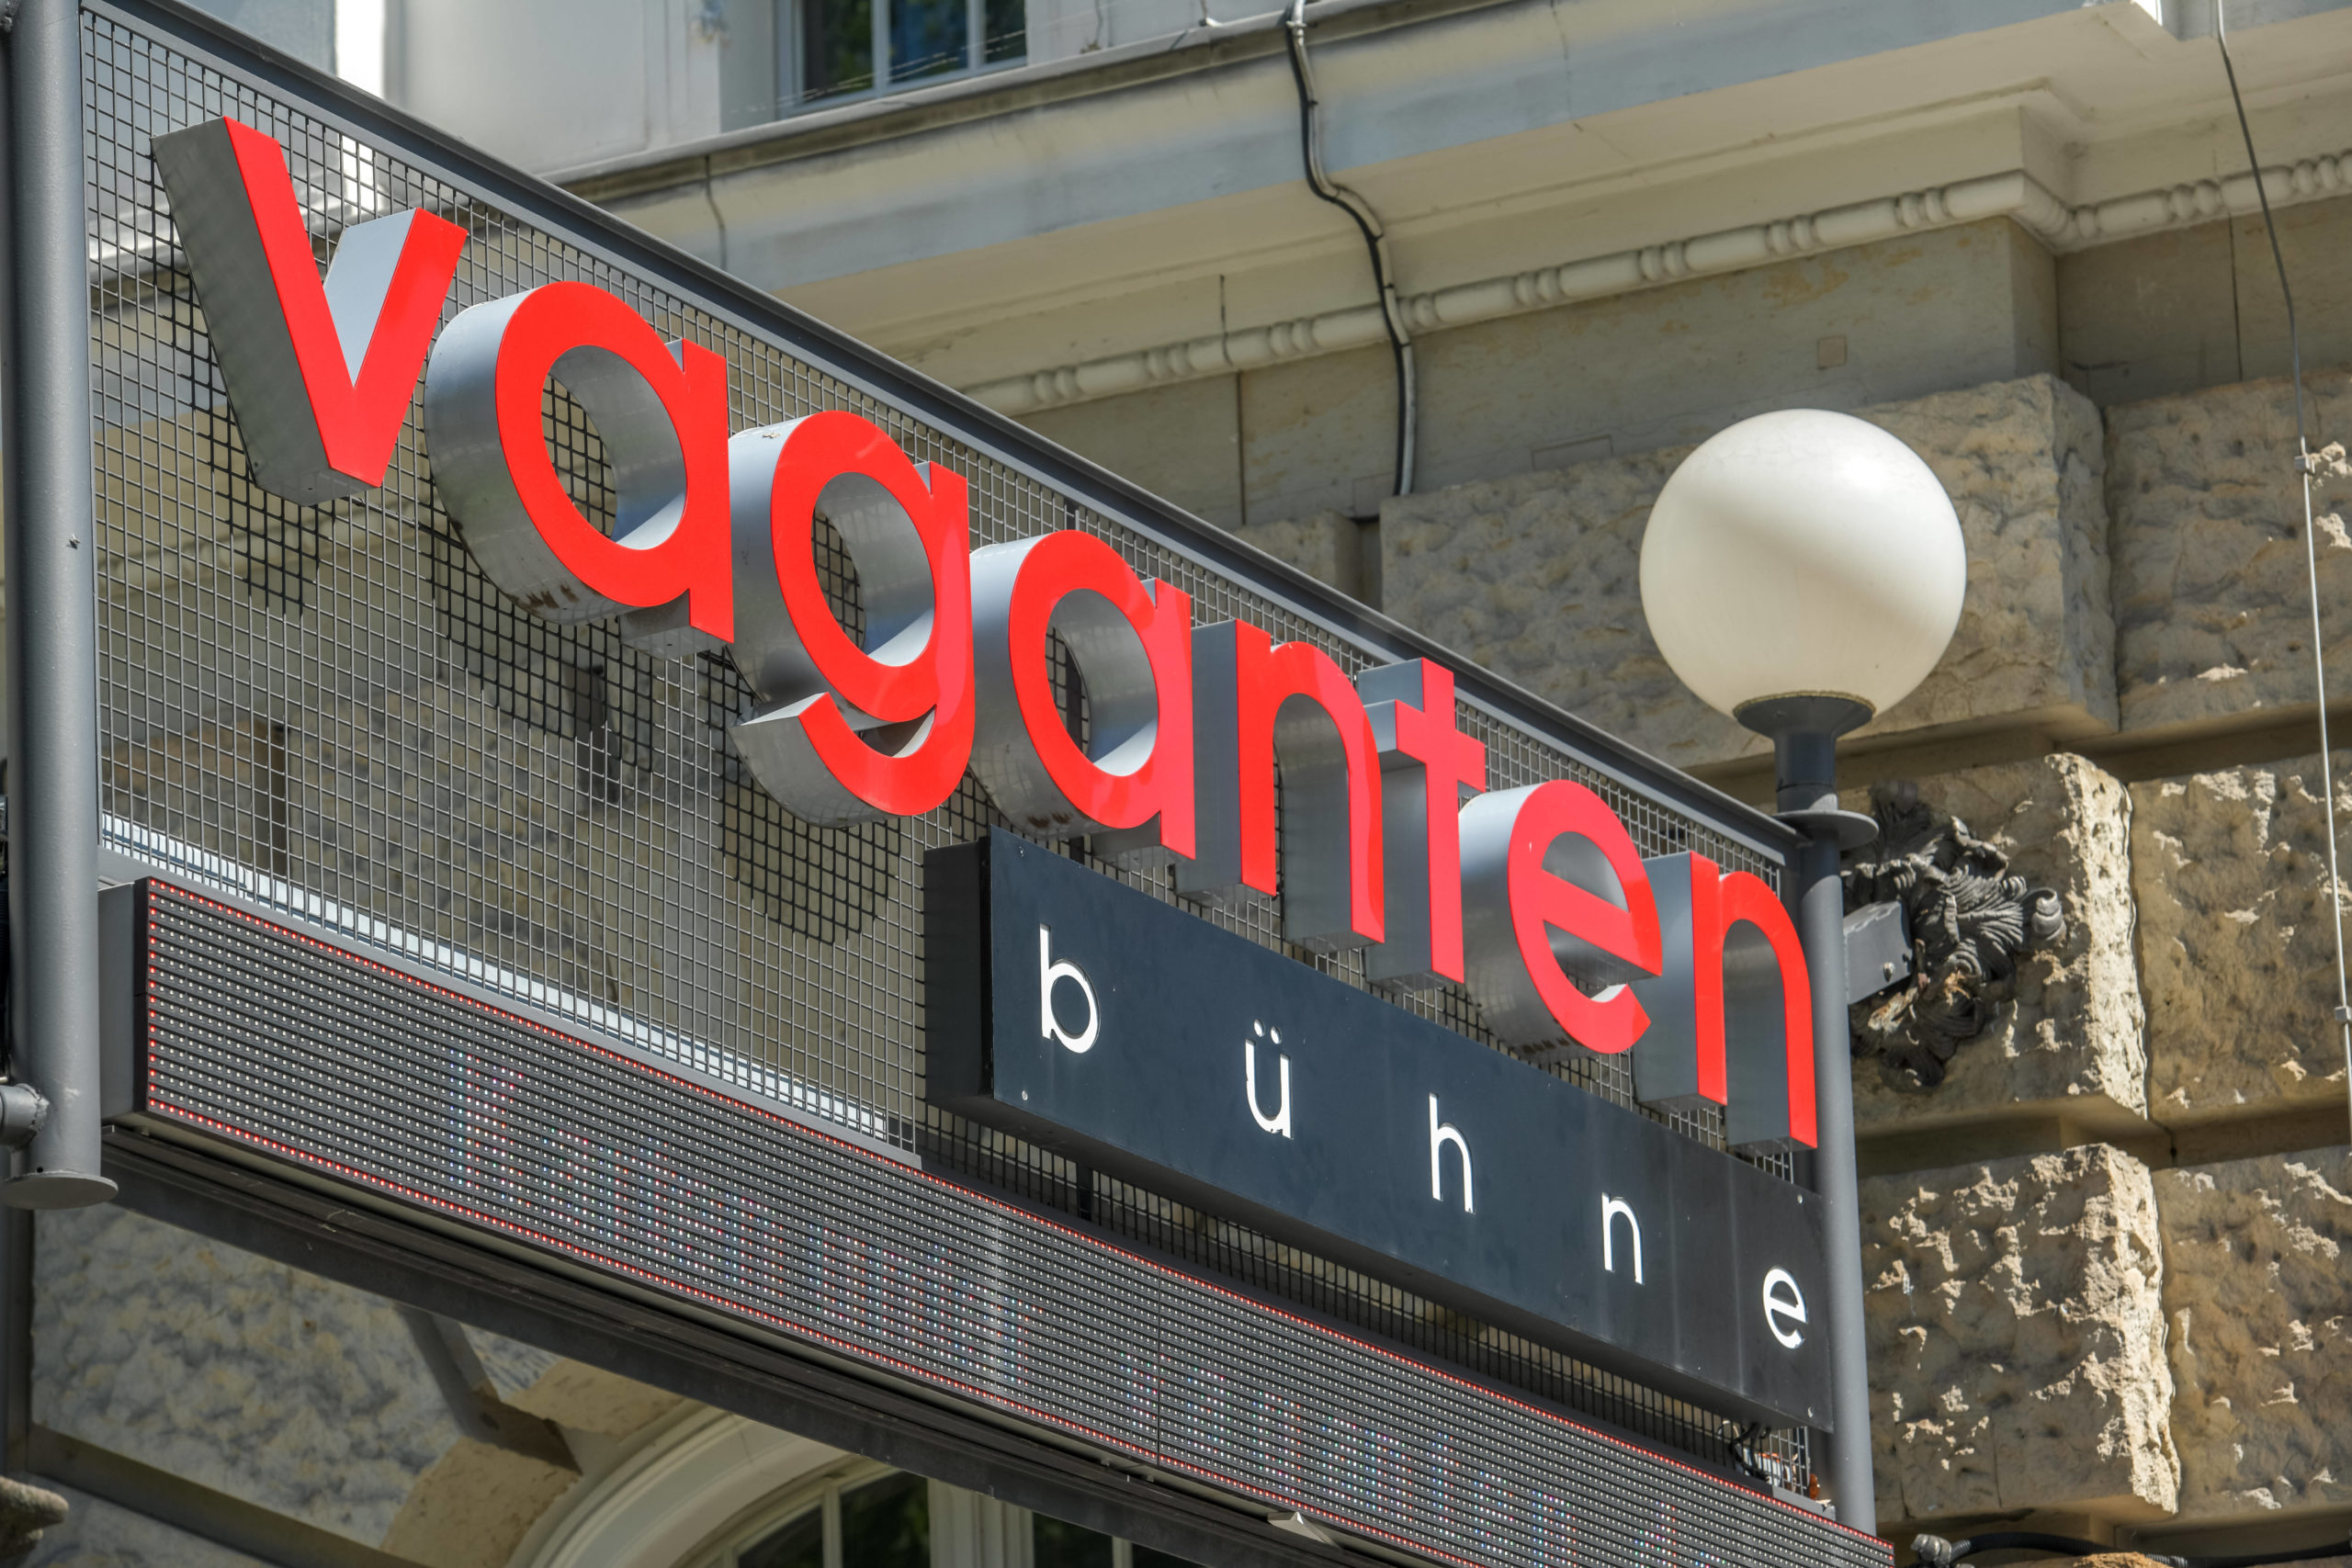 Die Vagantenbühne ist eines der wichtigsten privaten Theater in Charlottenburg. Foto: Imago/Joko